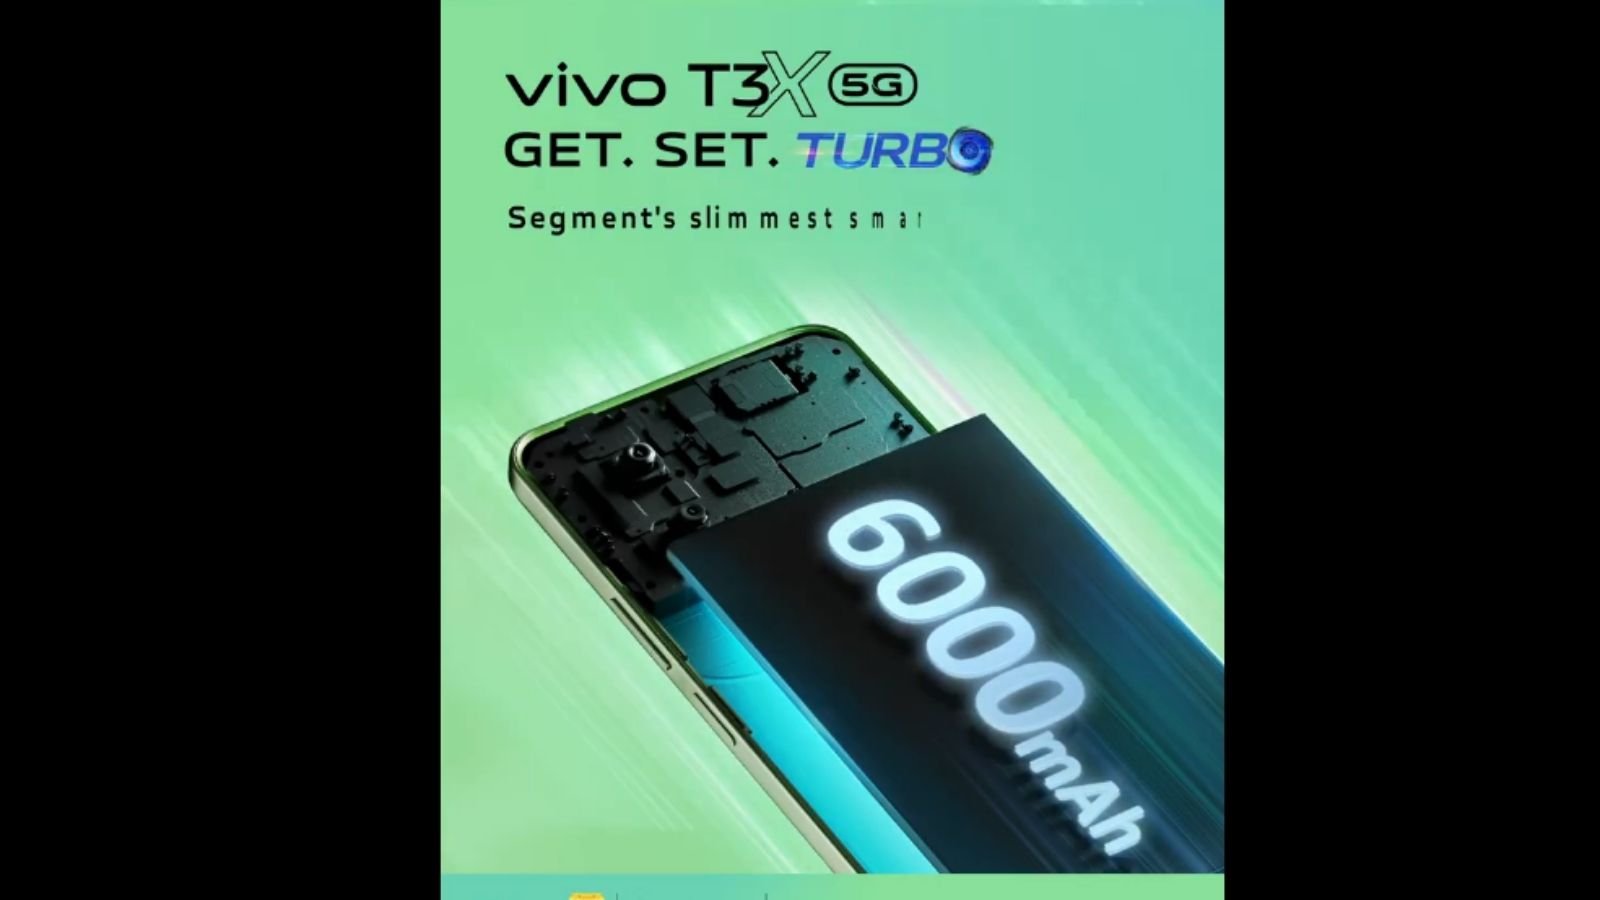 vivo şirketi, T3x'in batarya kapasitesini X üzerinden yaptığı paylaşım ile resmi olarak duyurdu.